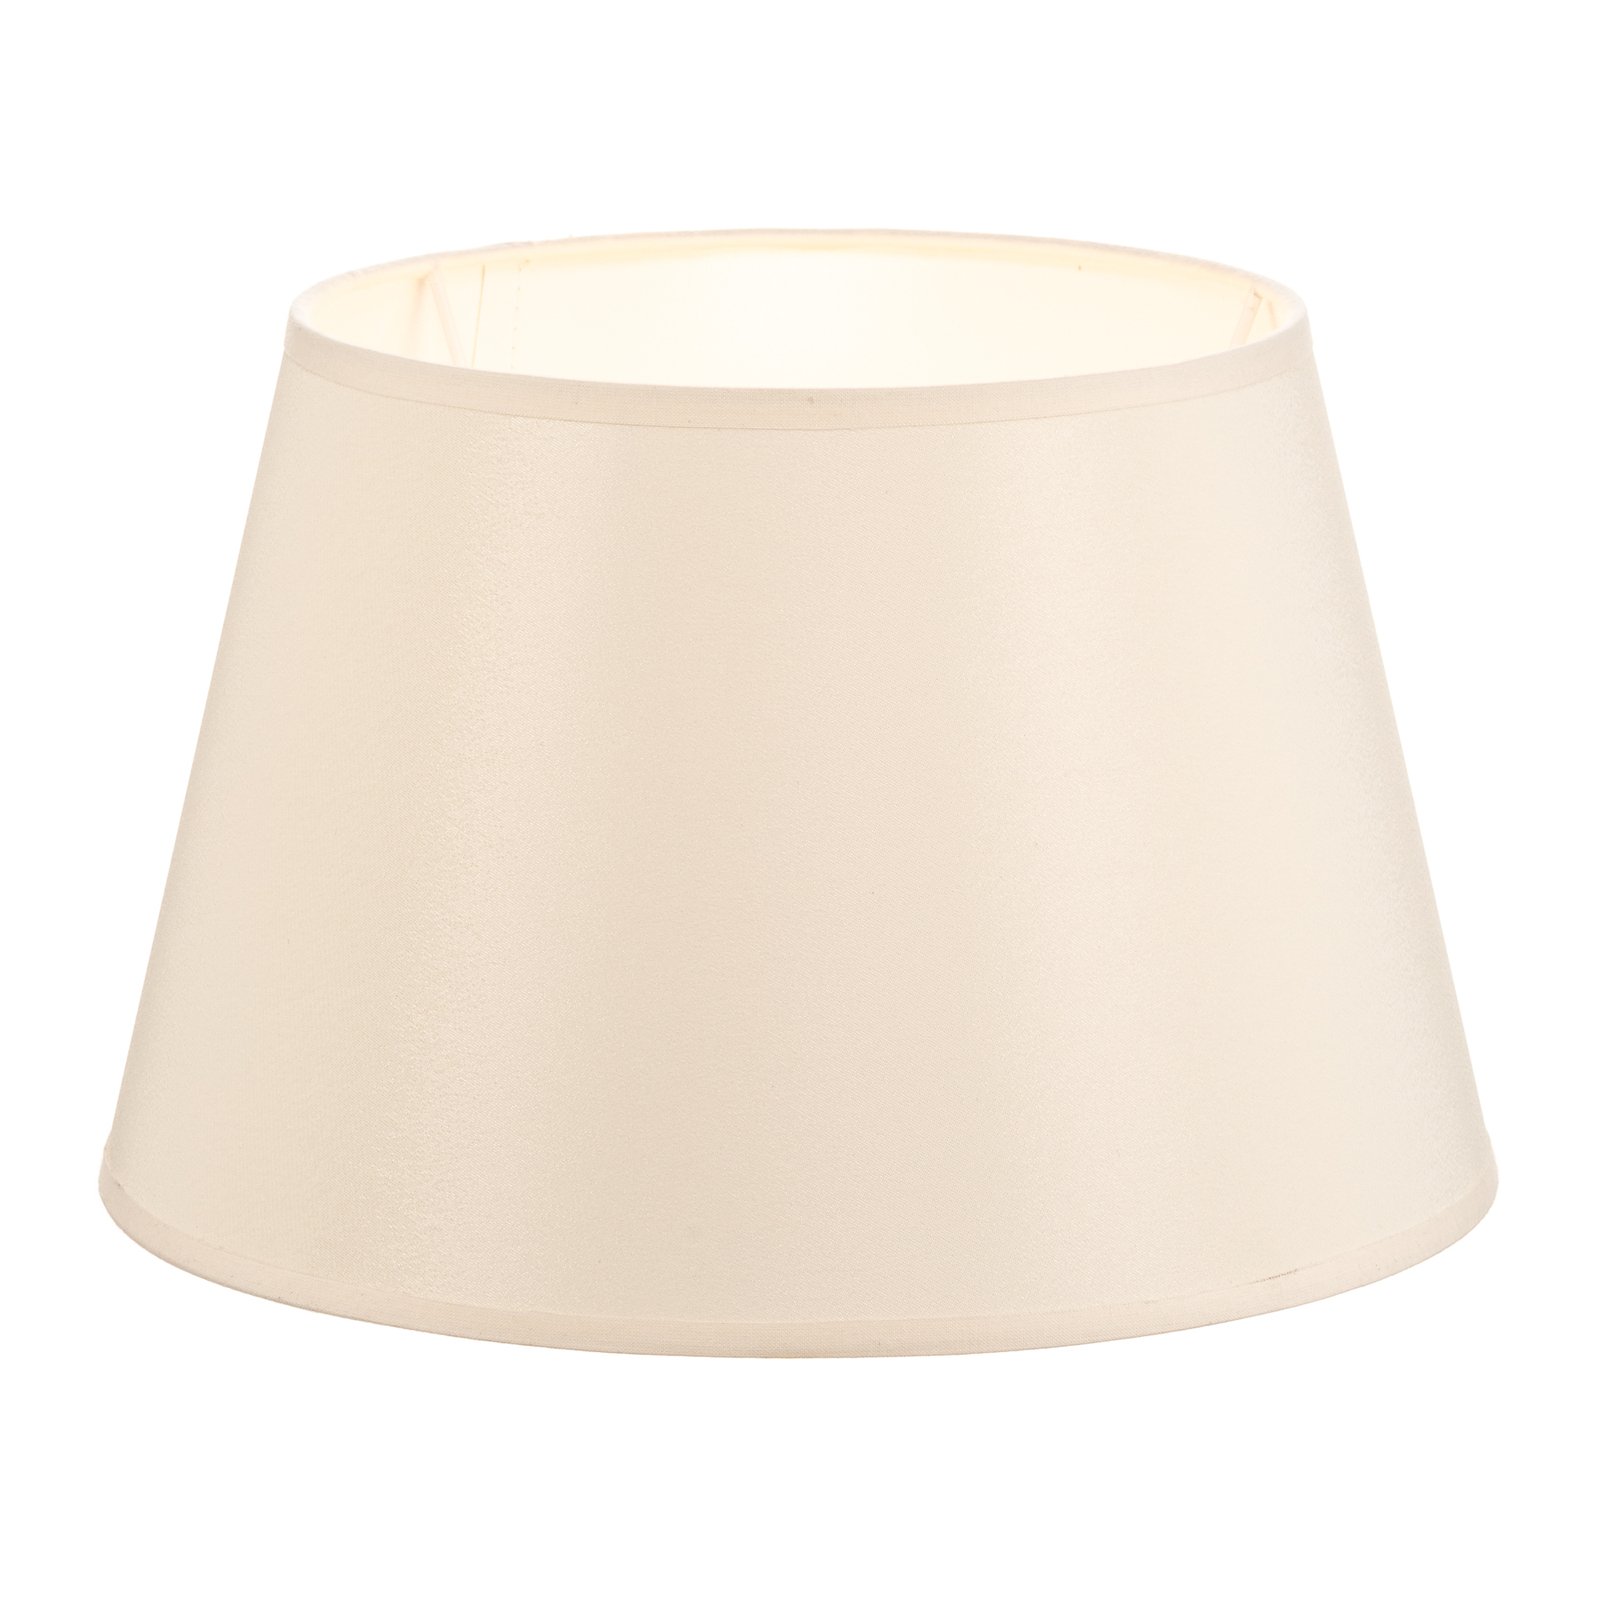 Cone lampshade height 18 cm, ecru/white chintz